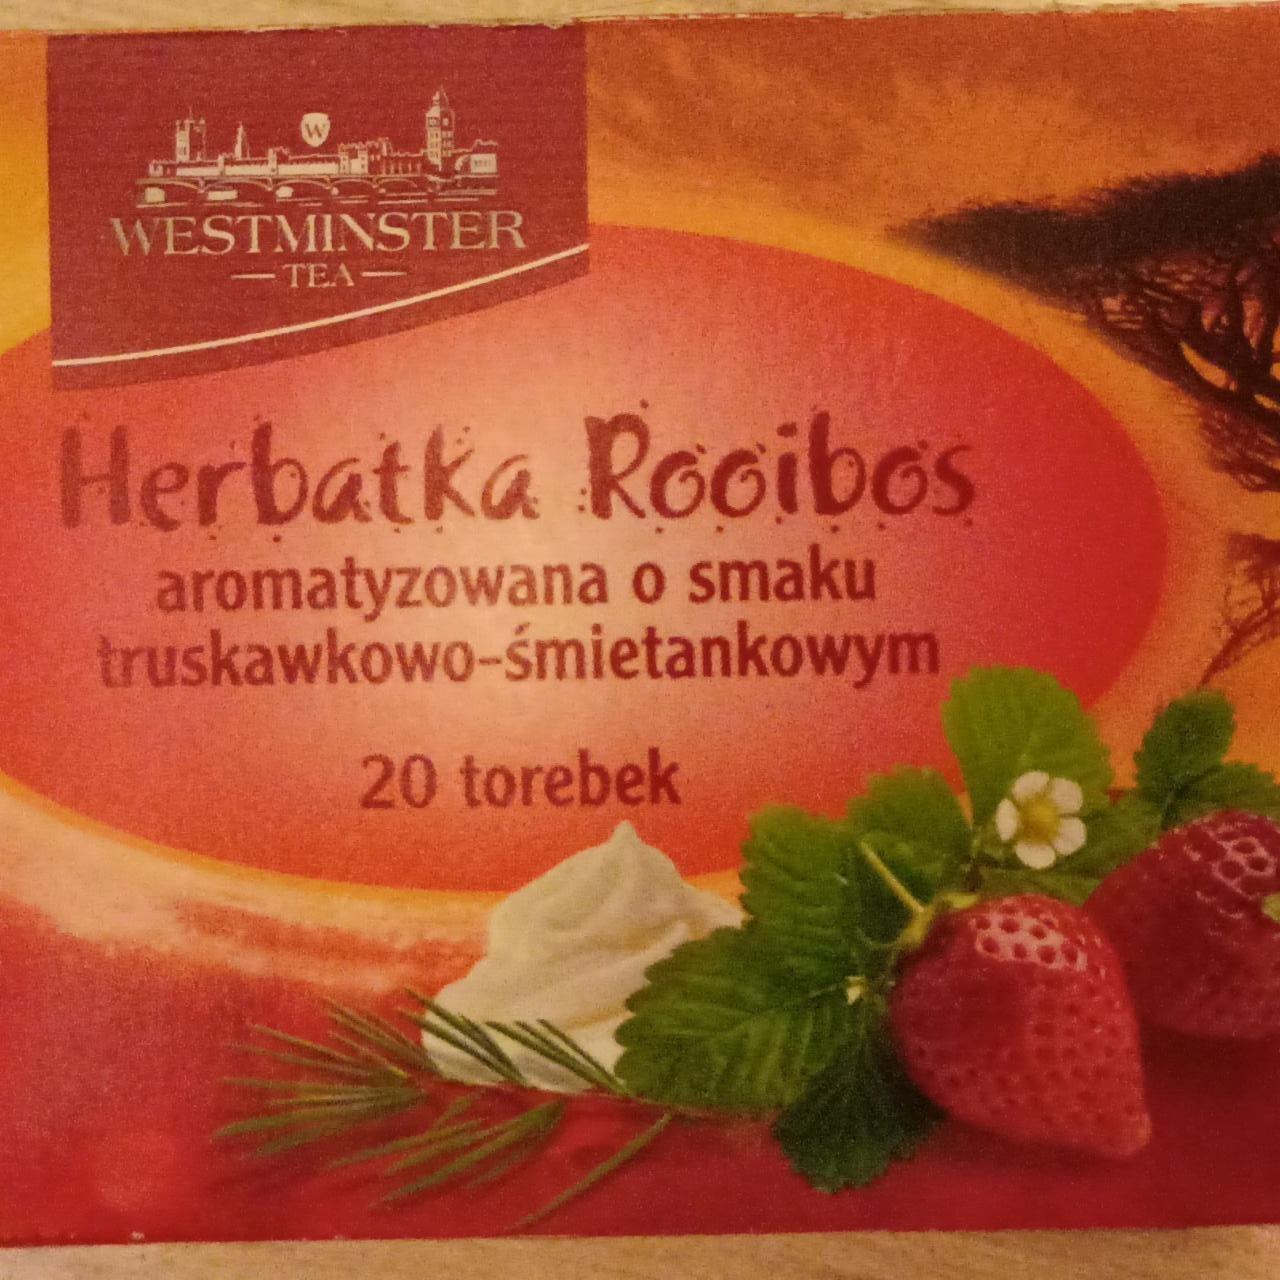 Zdjęcia - Herbatka Rooibos aromatyzowana o smaku truskawkowo-śmietankowym Westminster Tea